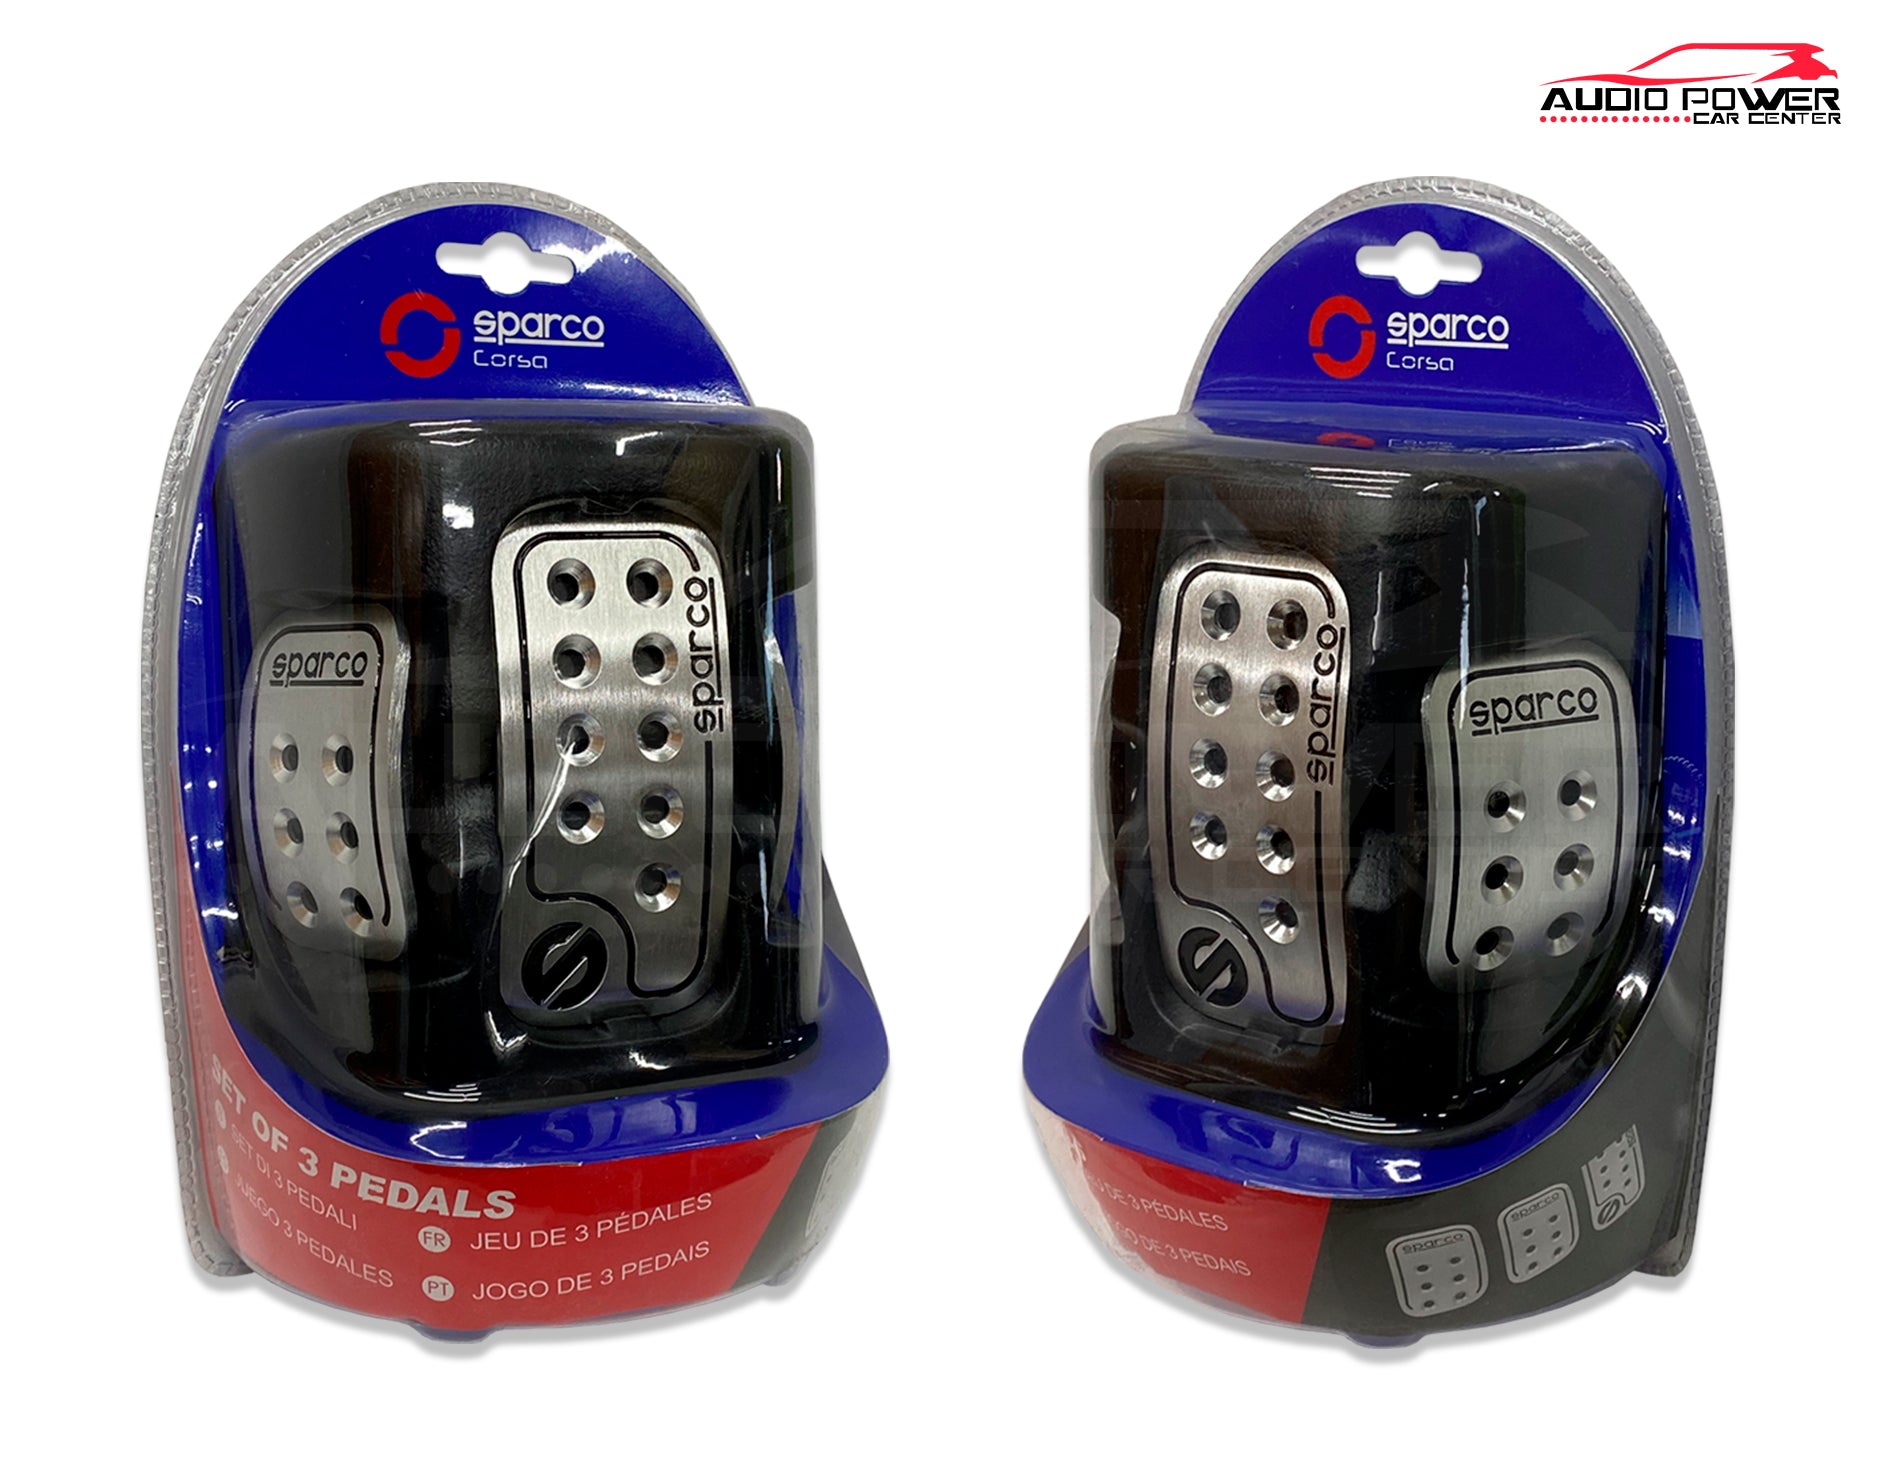 Juego de 3 pedales Sparco OPC0406 – Audio Power Mobile Shop SA de CV